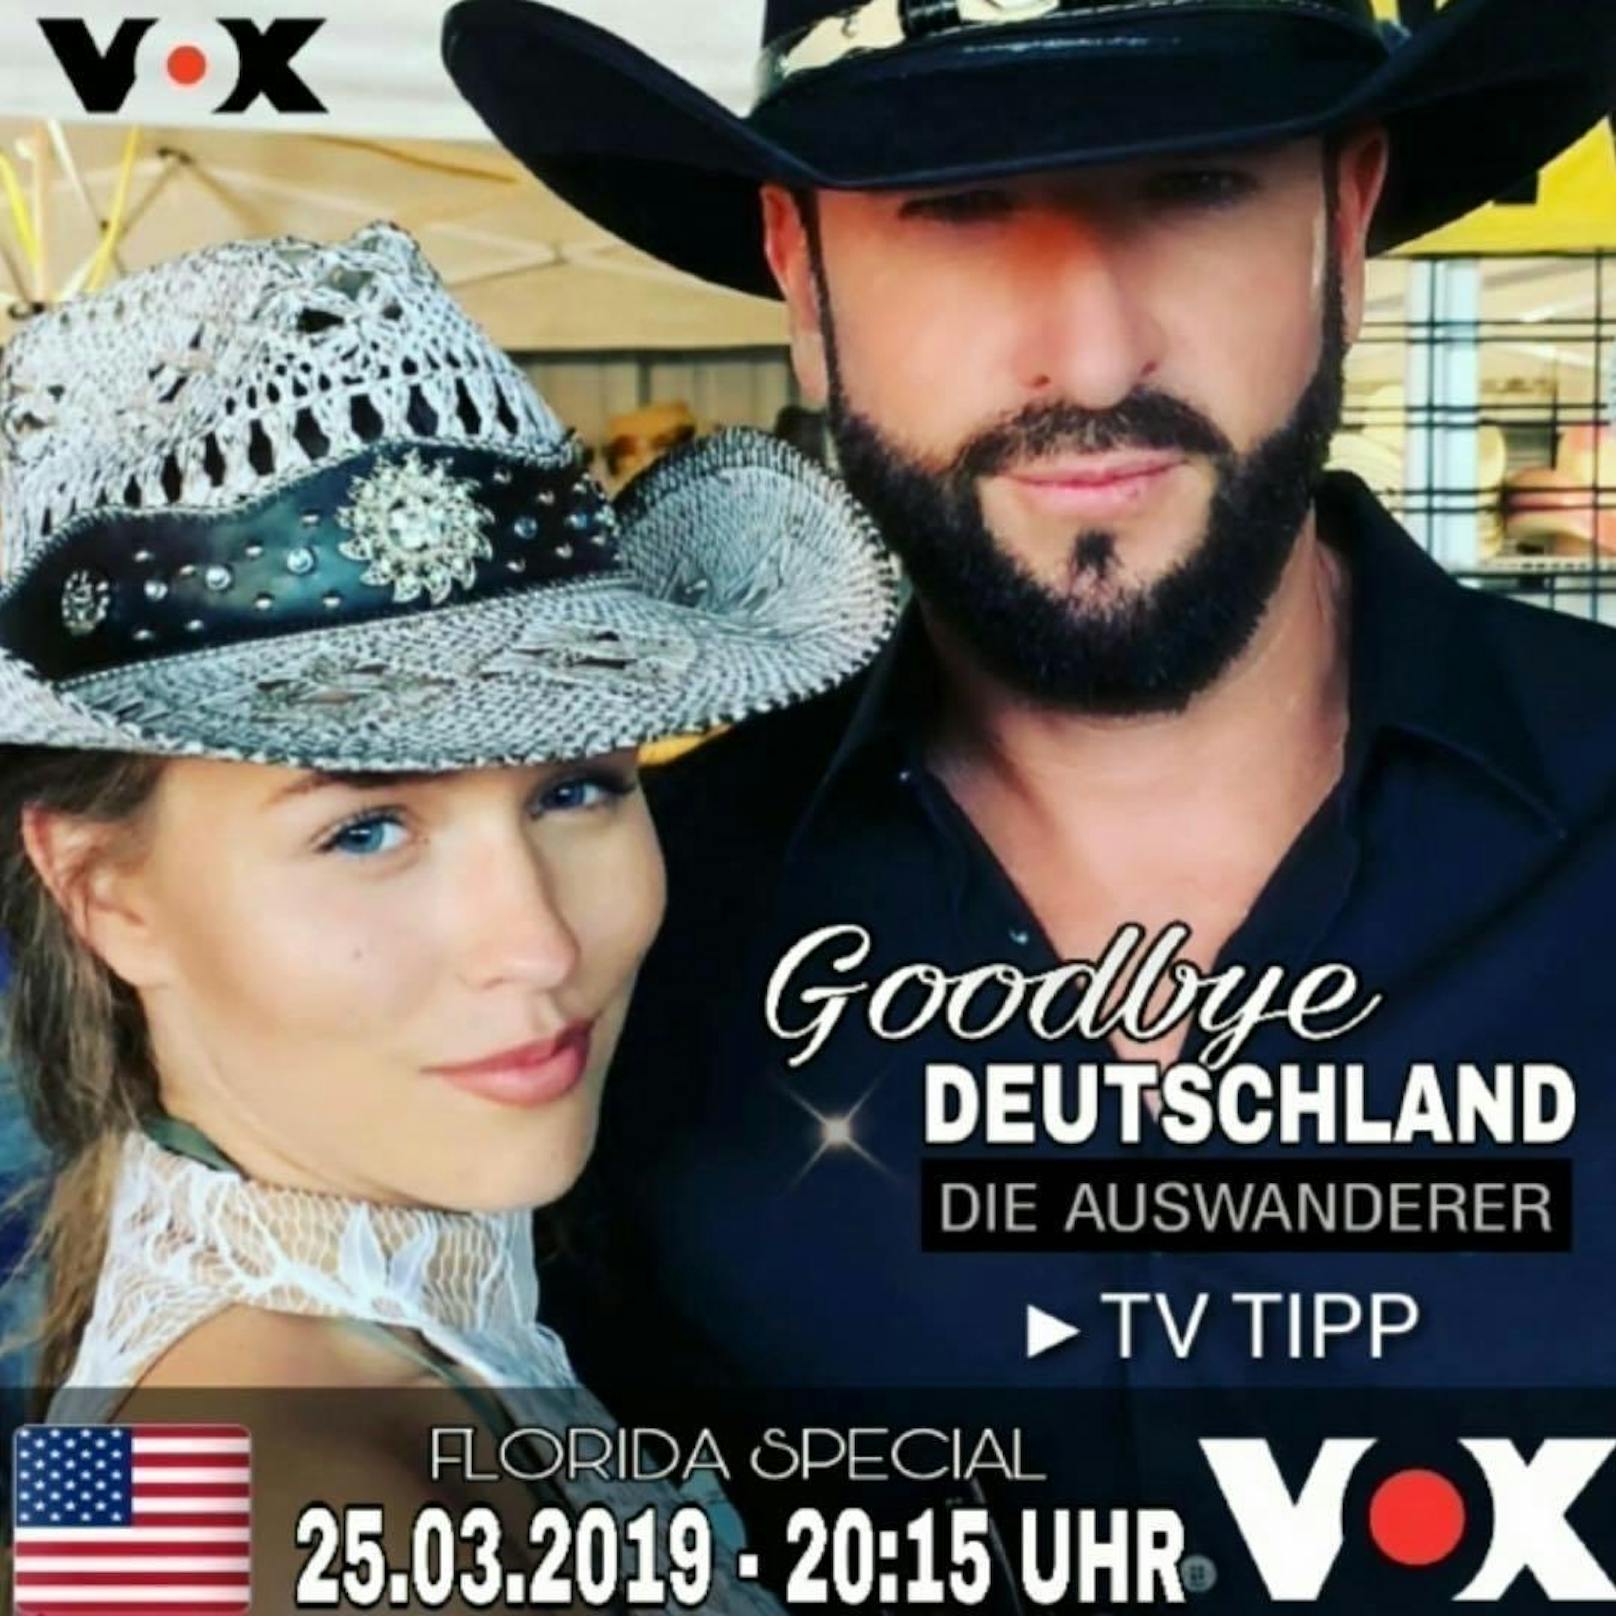 MÄRZ: Wendler lüftet am 10. März das große Geheimnis. Zusammen mit Laura wird er von einem Kamerateam der Auswanderer-Serie "Goodbye Deutschland" begleitet.